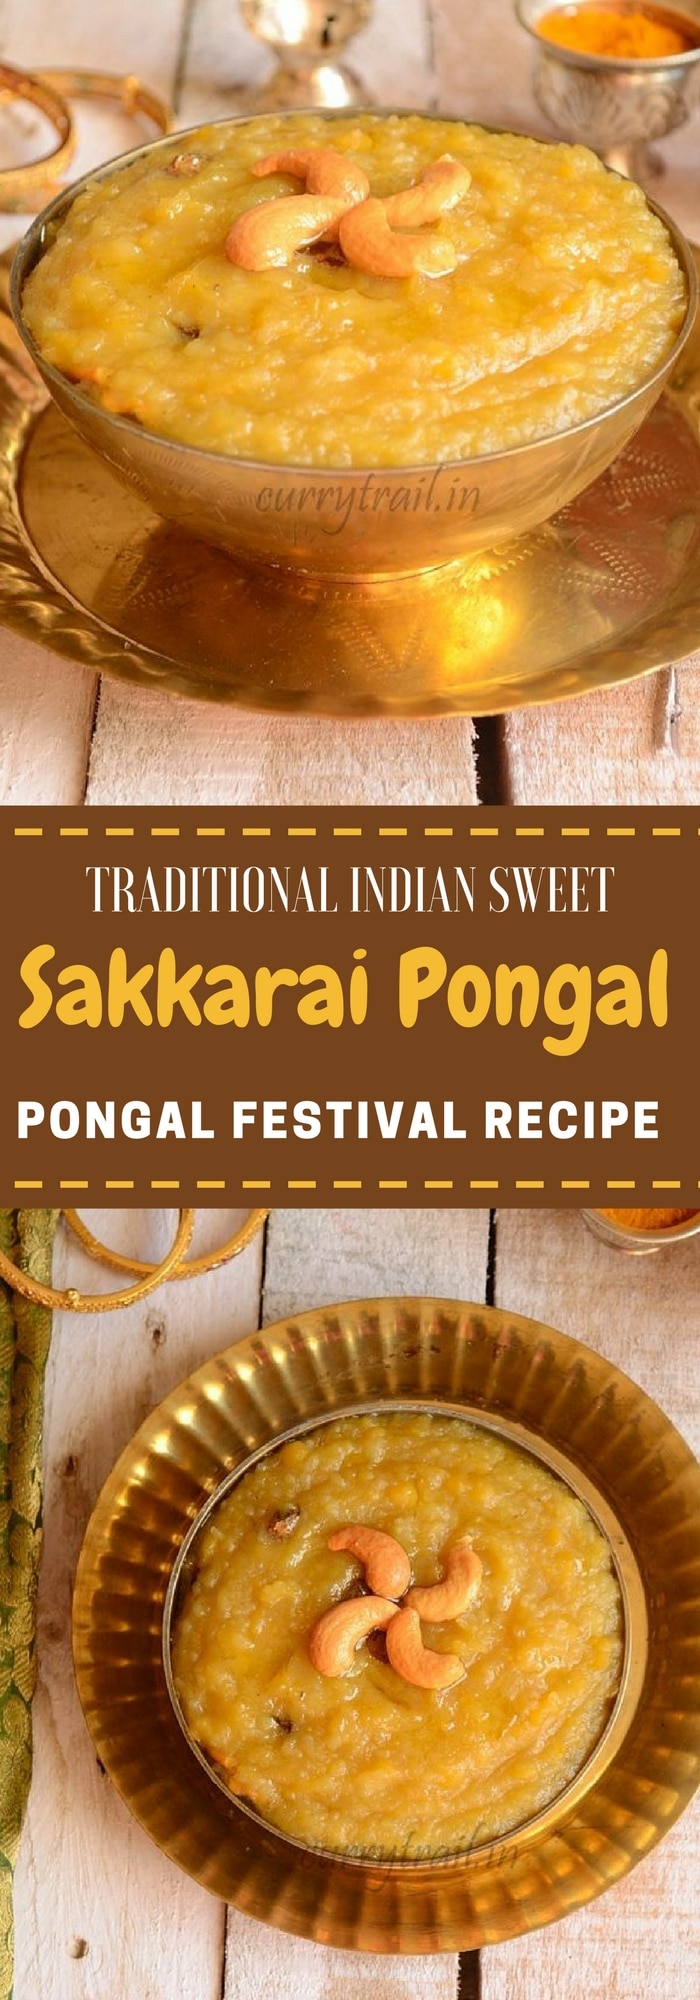 Sakkarai Pongal